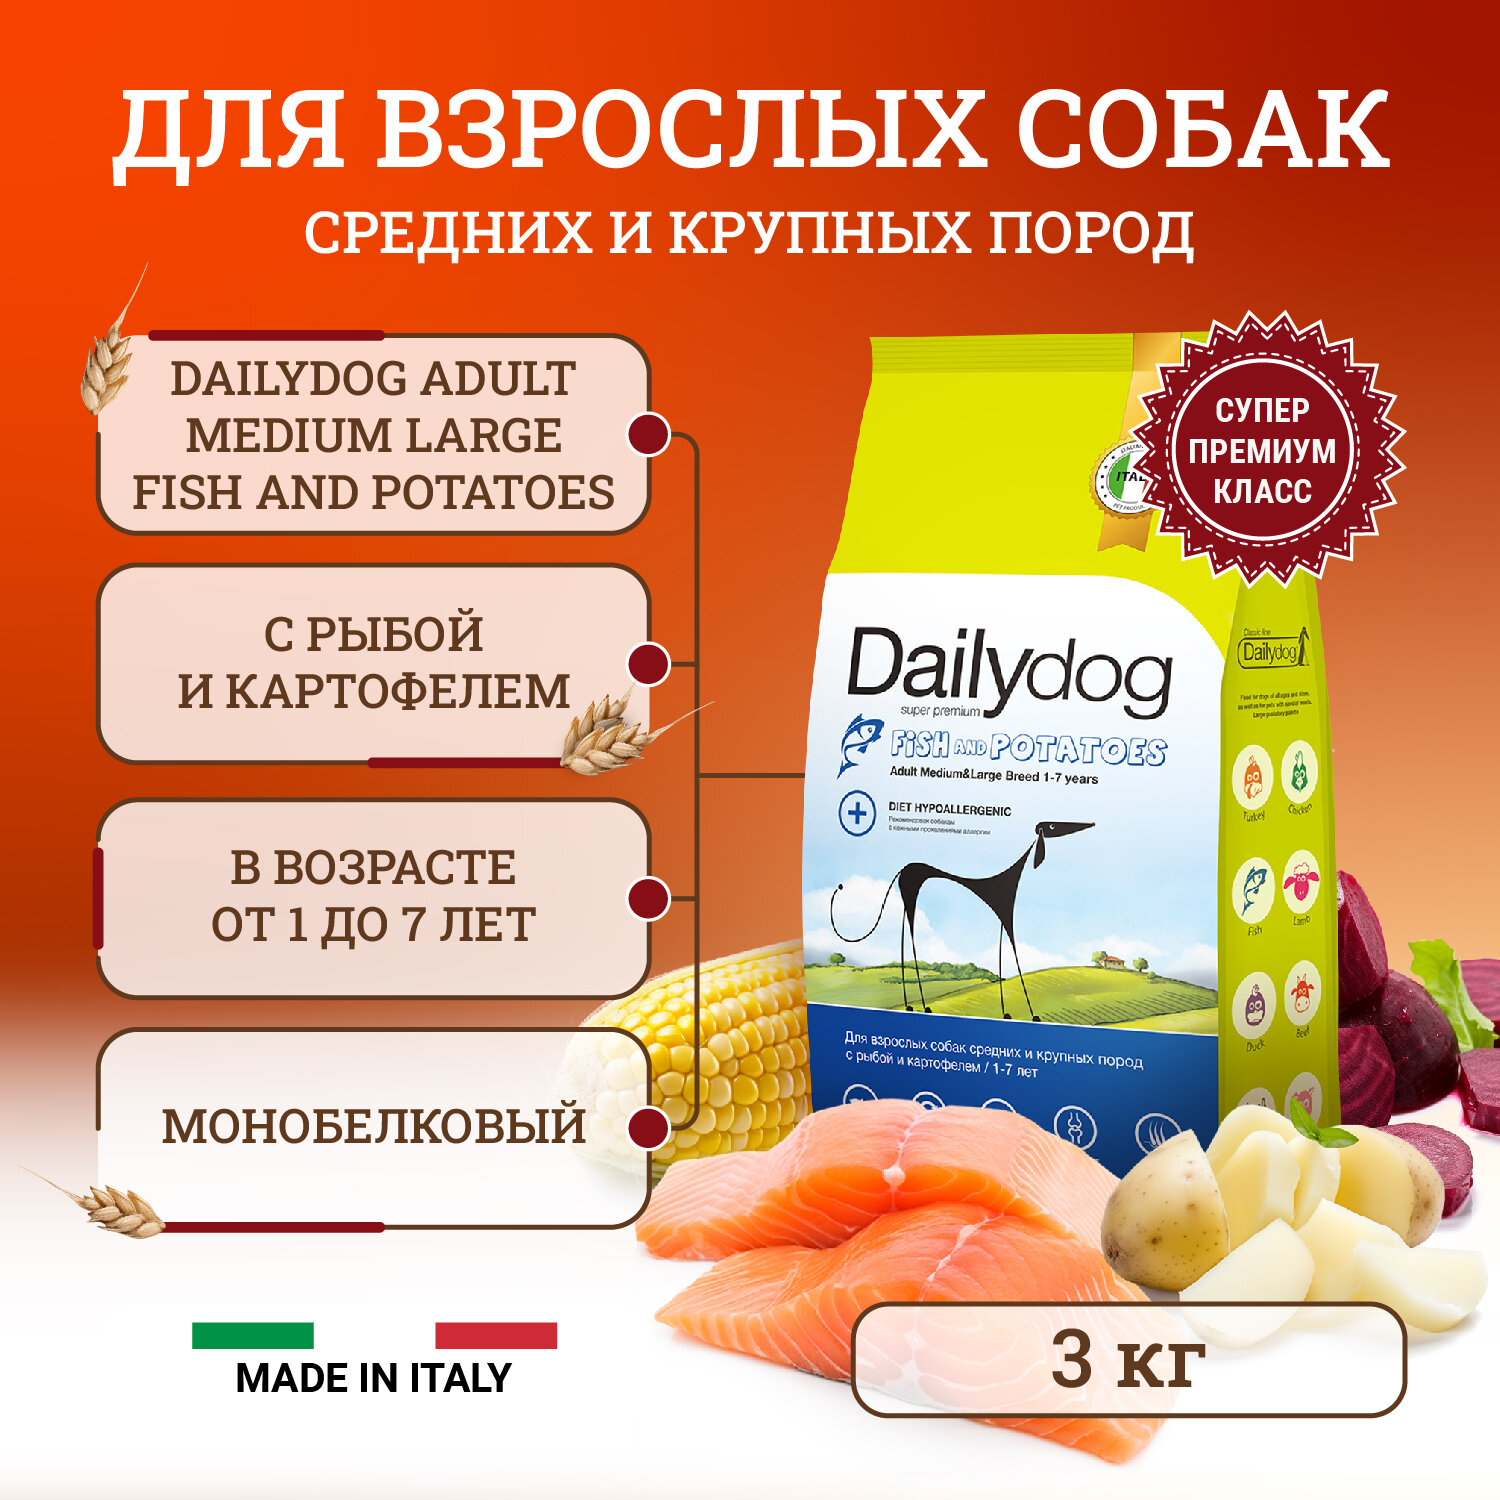 Сухой корм для собак Dailydog Adult Medium and Large Fish and Potatoes средних и крупных пород, с рыбой и картофелем - 3 кг